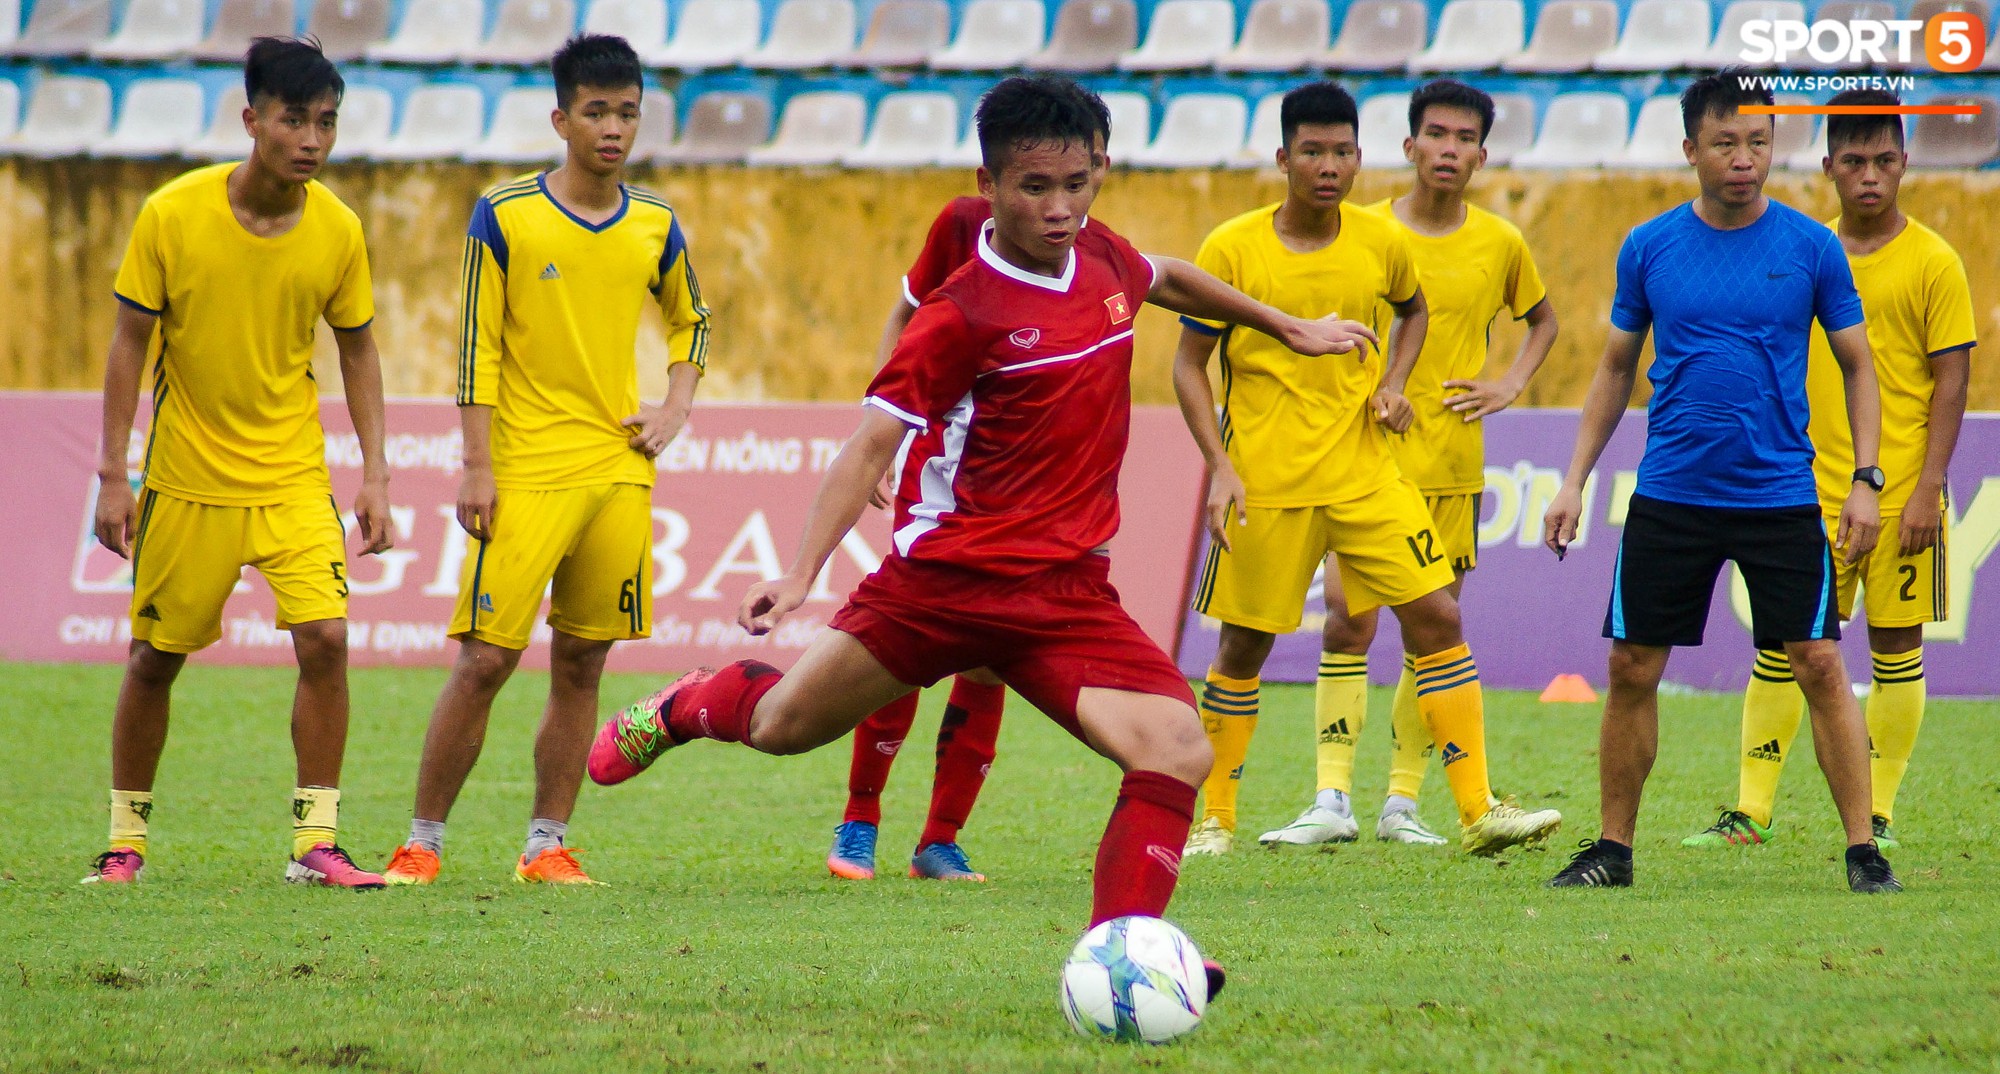 U16 Việt Nam cầm hoà đàn anh U19 1-1 dưới trời mưa tại Nam Định - Ảnh 7.